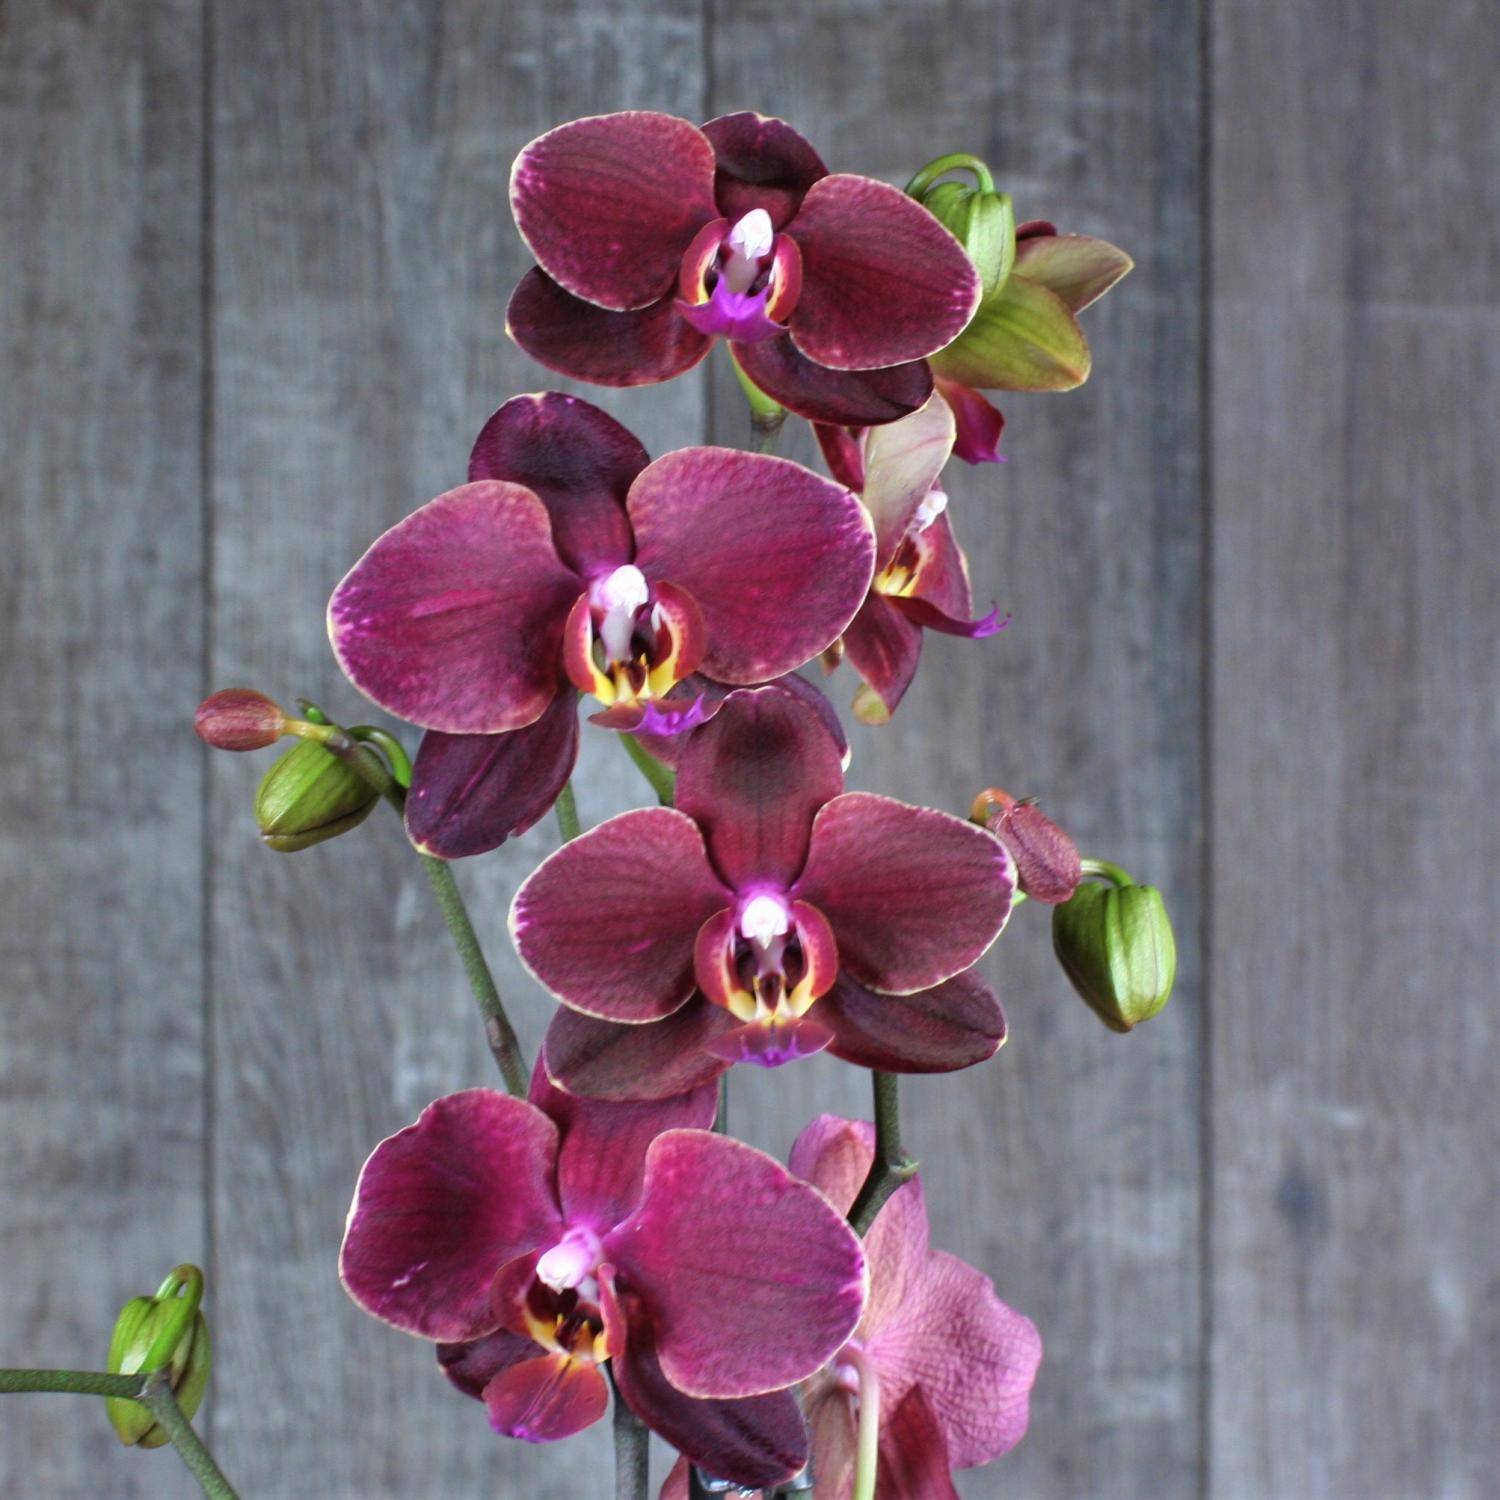 Голубая орхидея: крашеная или нет, существует ли данного цвета, есть и бывает ли в природе?